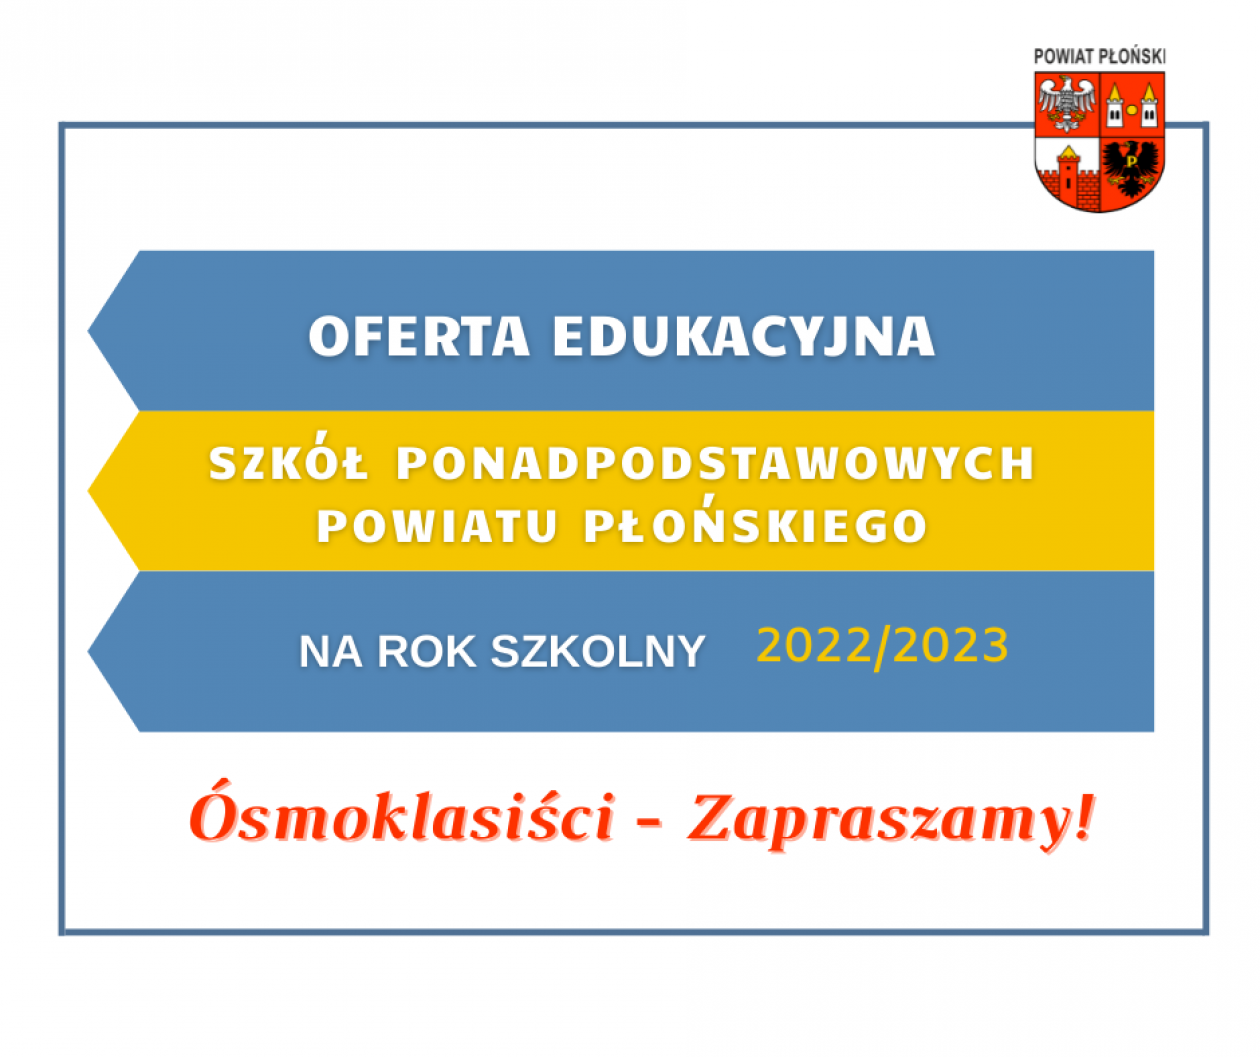 Szkoły ponadpodstawowe podległe powiatowi płońskiemu przedstawiają swoją ofertę na rok szkolny 2022/2023